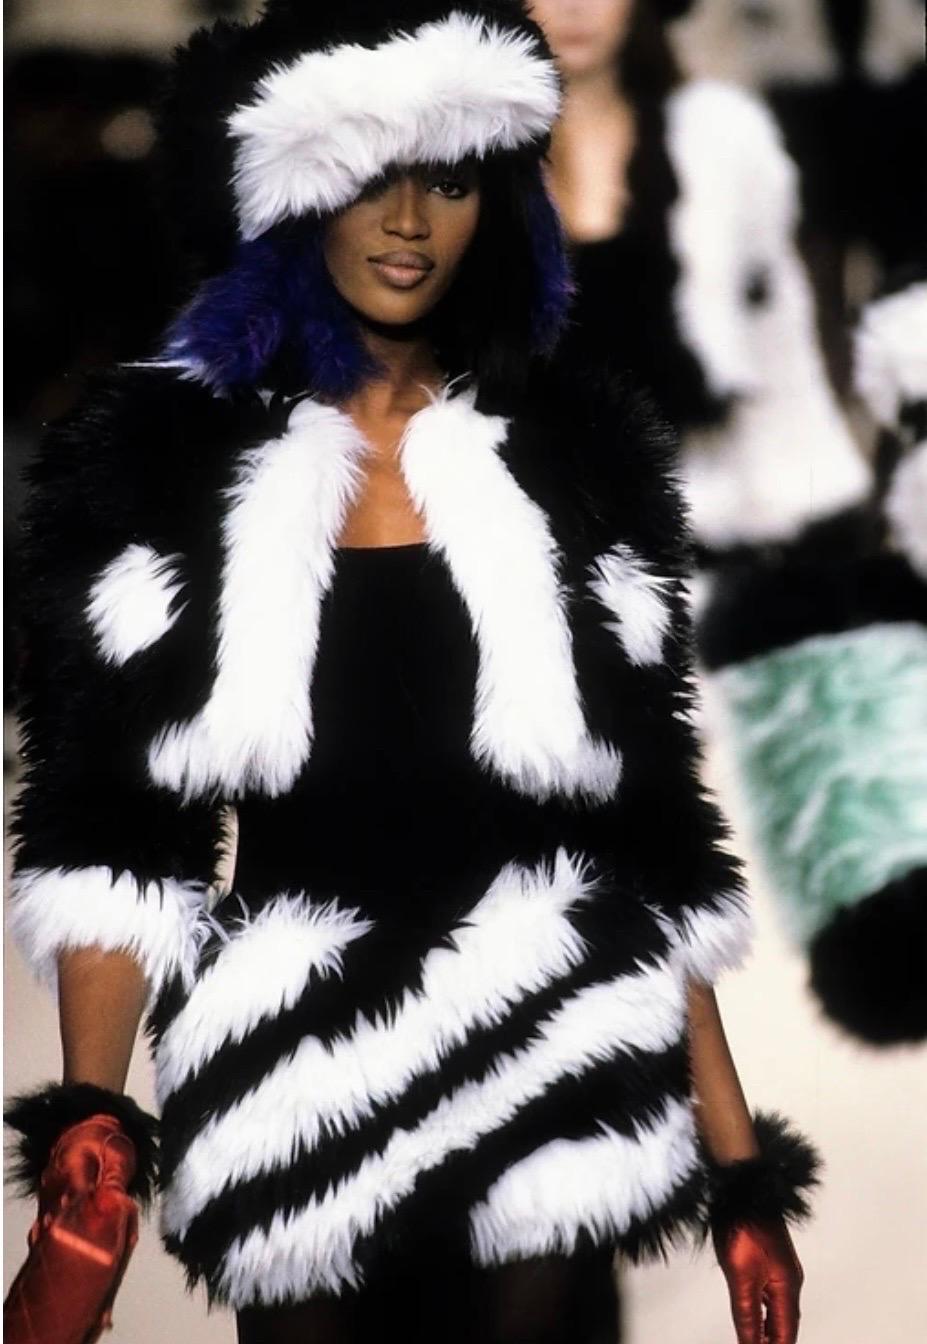 Mini robe en fausse fourrure noire et blanche de Chanel by Karl Lagerfeld, de la collection automne-hiver 1994, telle qu'elle a été vue sur le podium sur Naomi Campbell. 
Robe en fausse fourrure ultra rare de la collection F/W 1994.
Pièce de